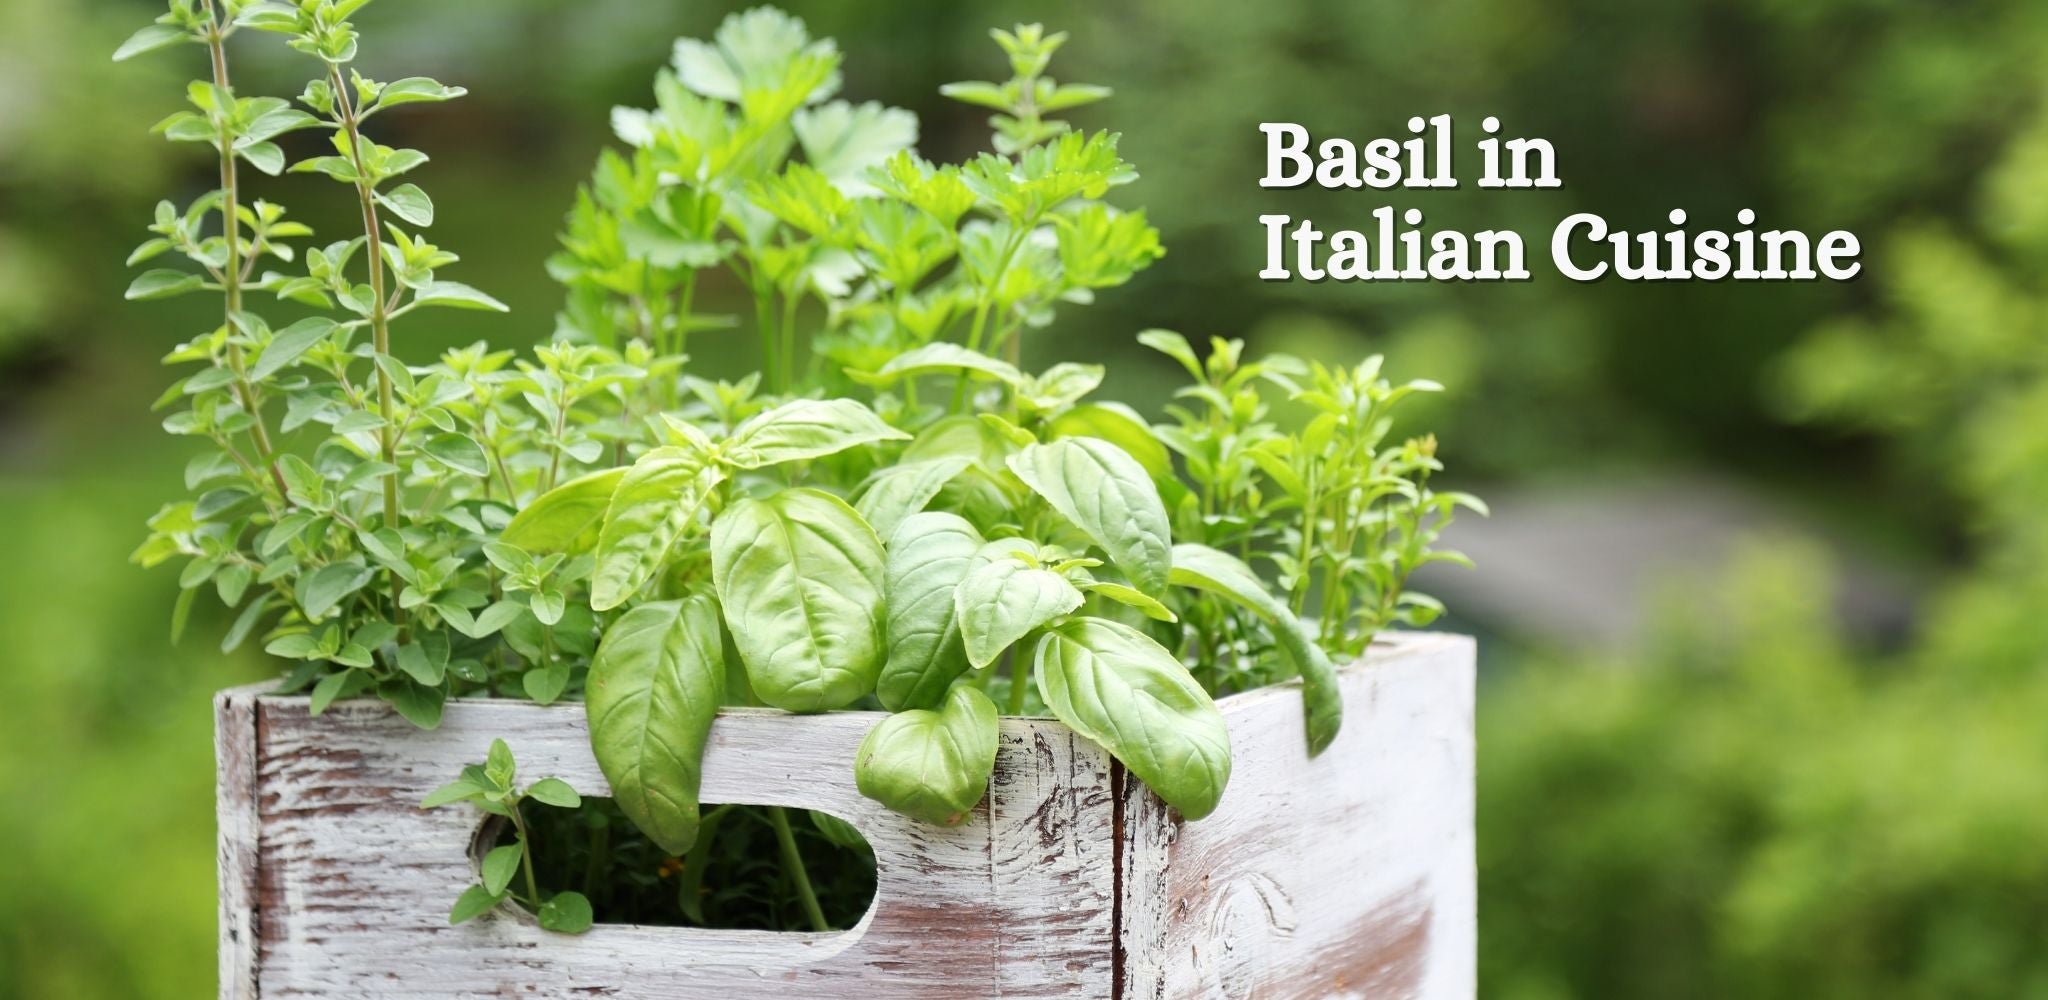 Basil in Italian Cuisine